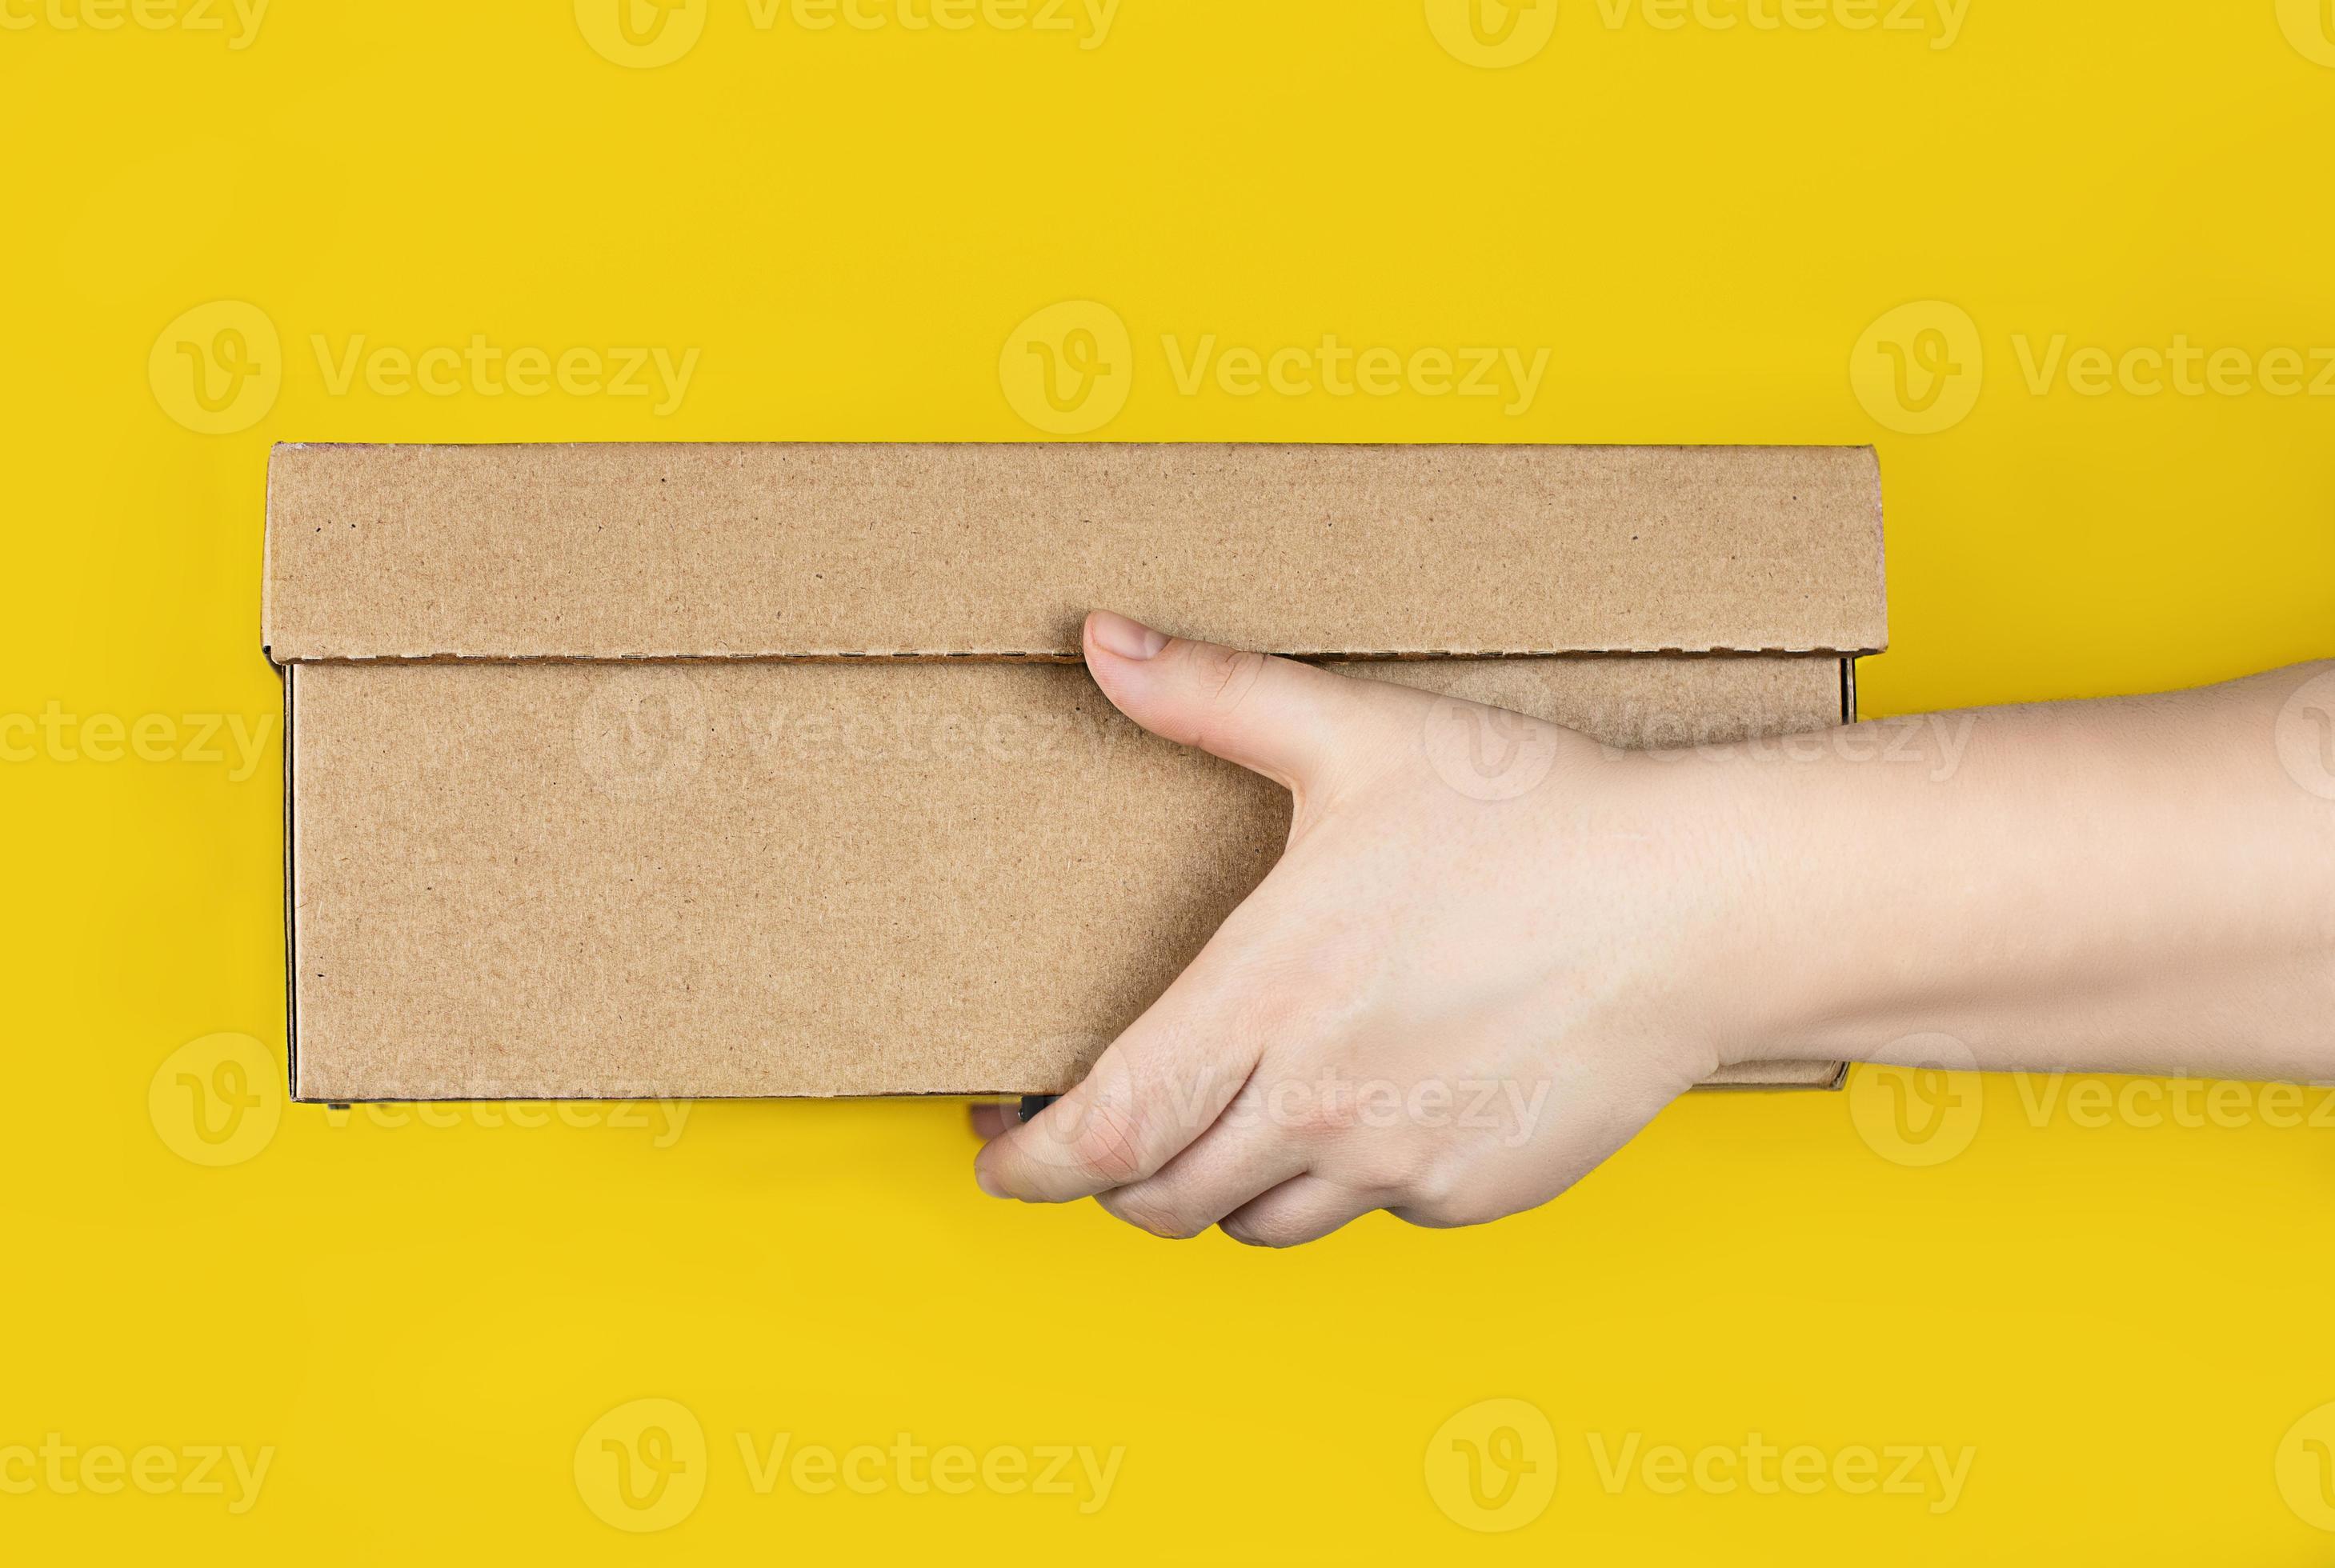 op gang brengen pijn Mexico groot karton doos in handen Aan een modieus geel achtergrond. horizontaal  foto. concept - levering van bestellingen naar uw huis door koerier, bon  van pakjes, veilig afstand 12576206 Stockfoto